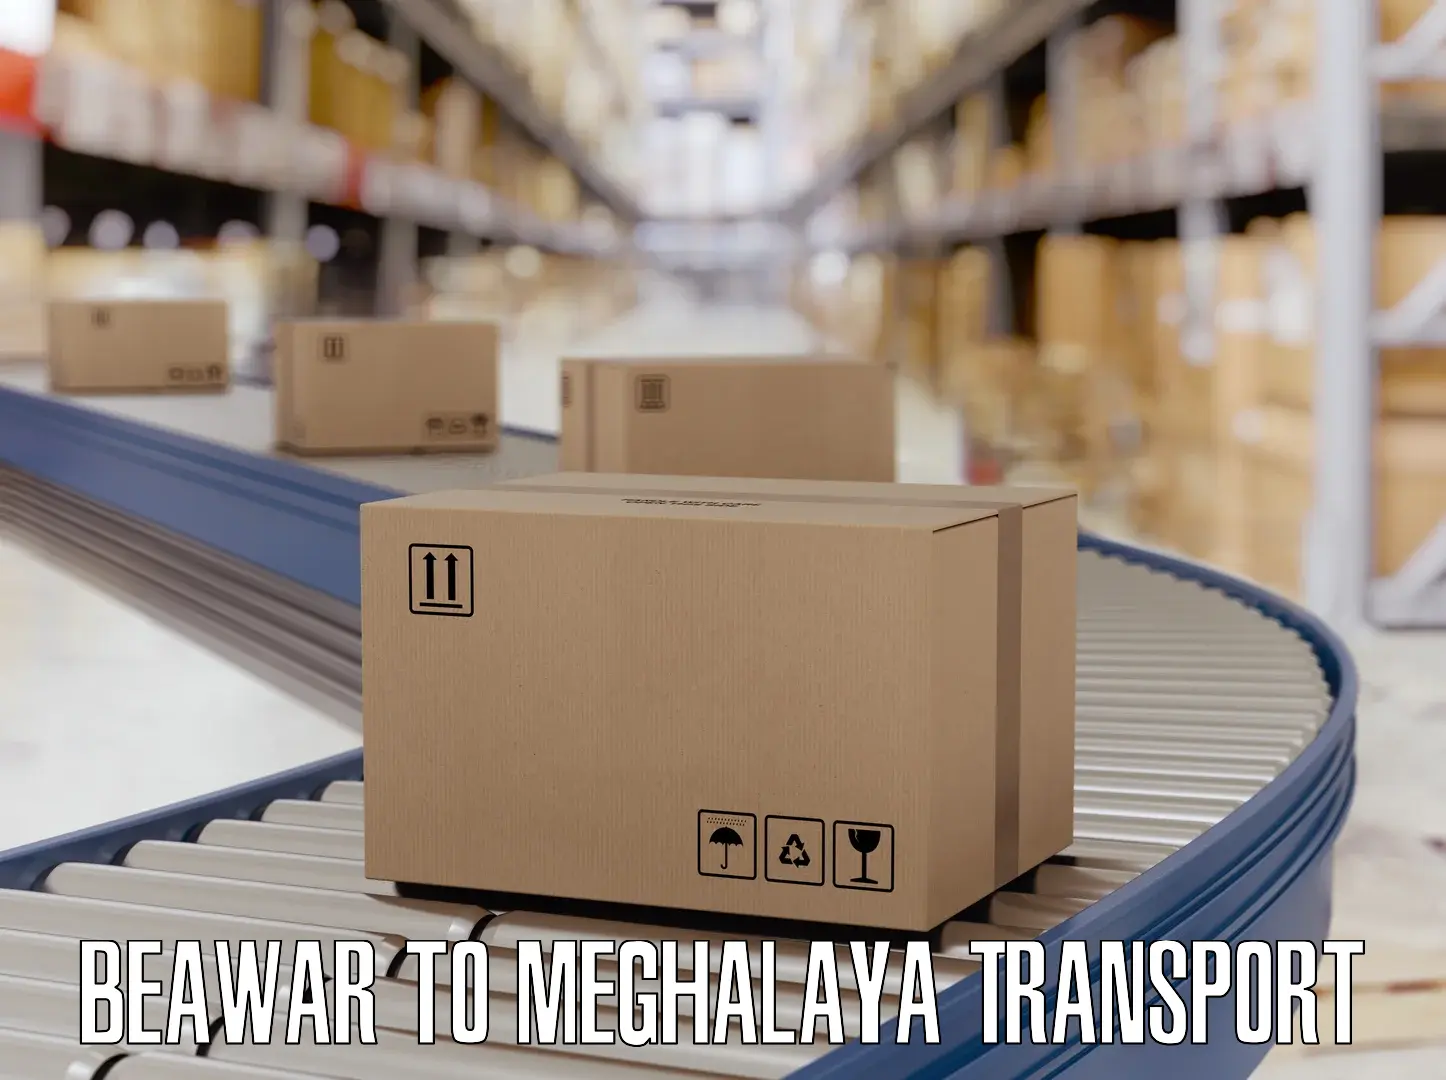 Transport in sharing Beawar to Meghalaya